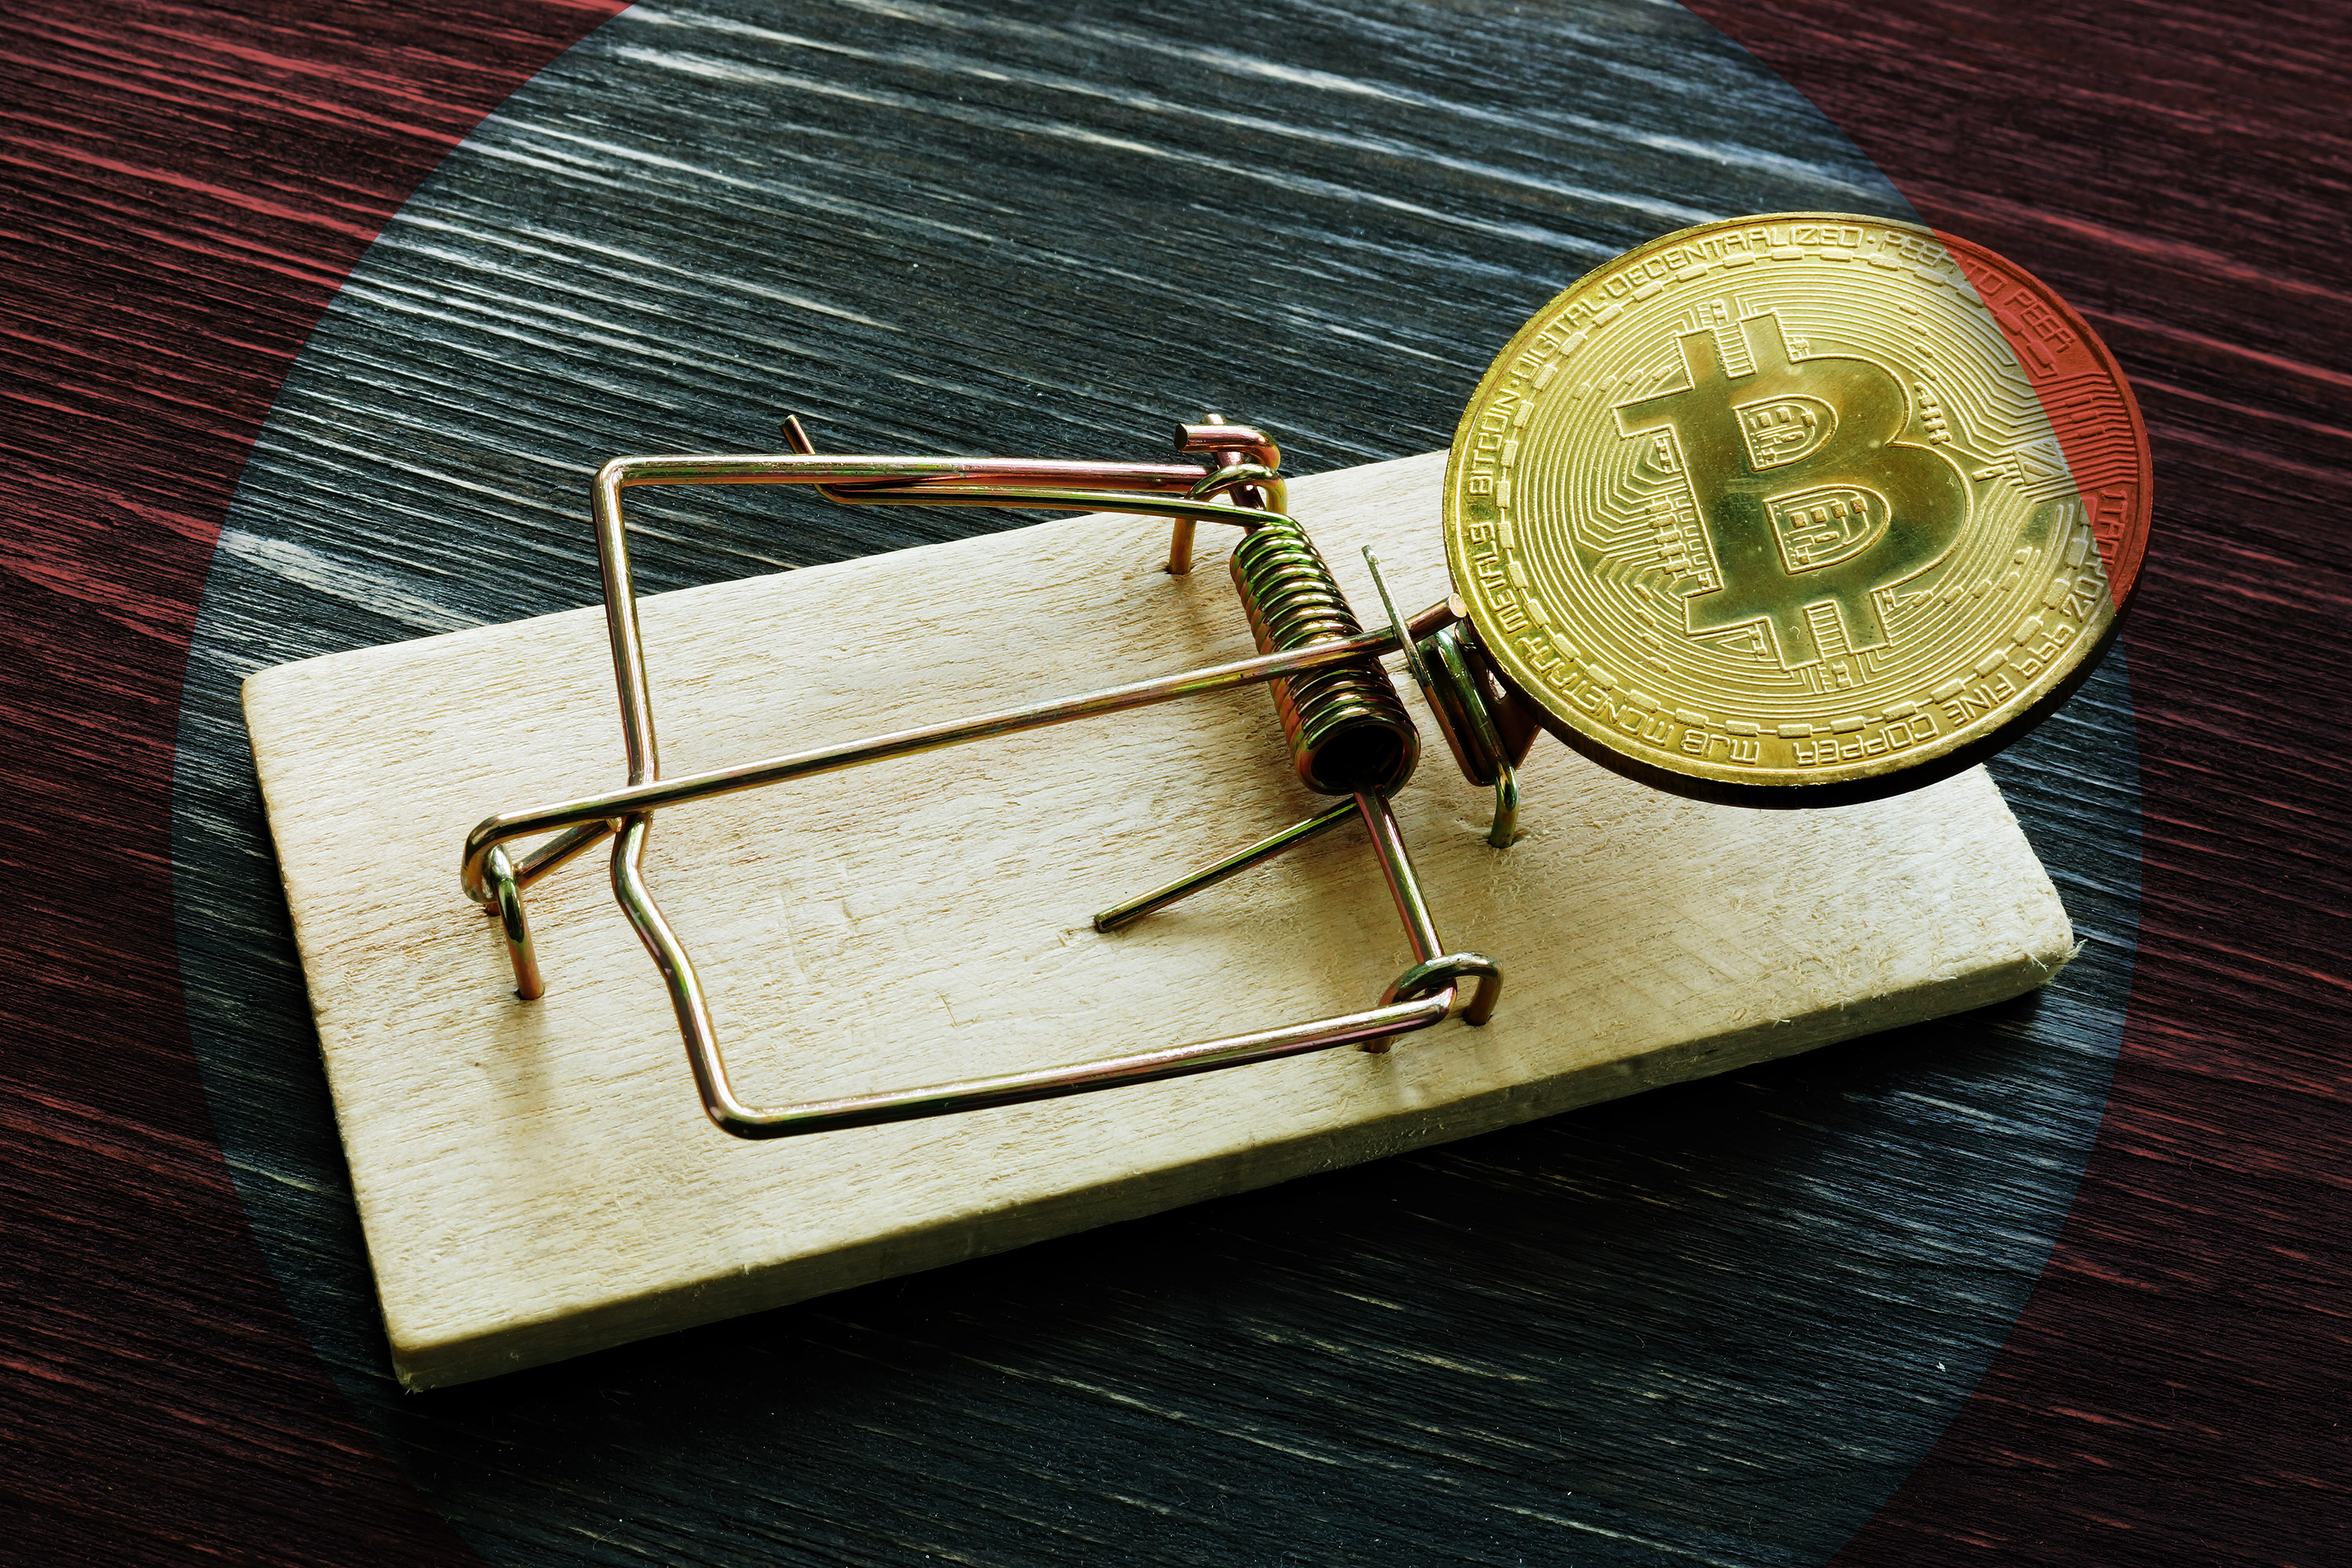 Une enquête de la police allemande sur un site de piratage mène à la saisie d'un magot de près de 50 000 Bitcoins, soit 2 milliards d'euros !